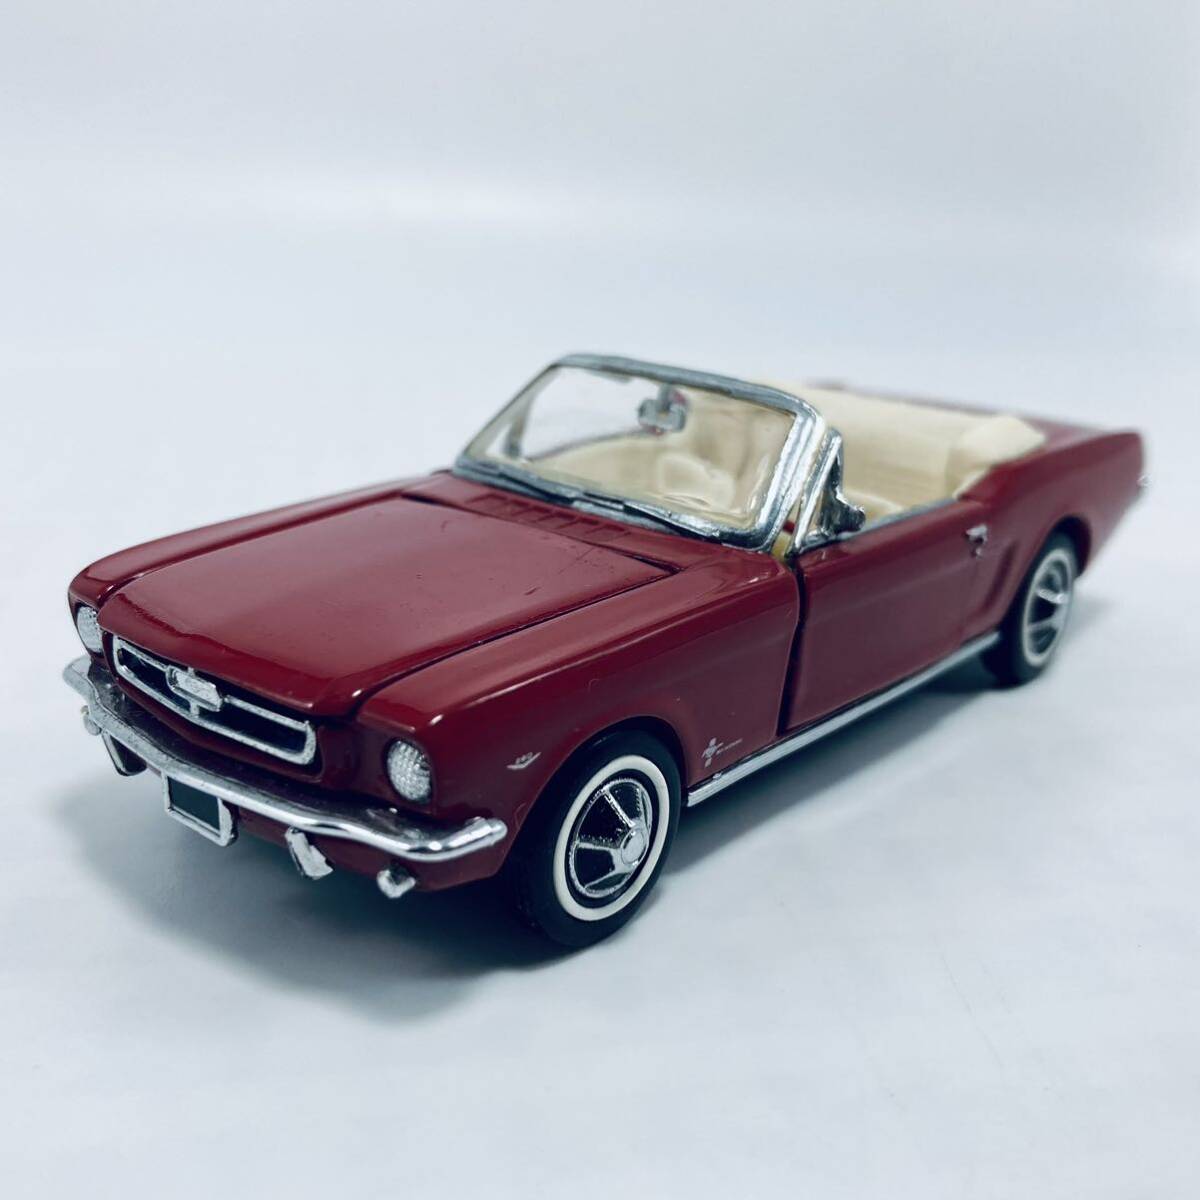  вне без коробки . Vintage предмет Franklin Mint 1/43 FORD MUSTANG CONVERTIBLE RED Mustang с откидным верхом красный 